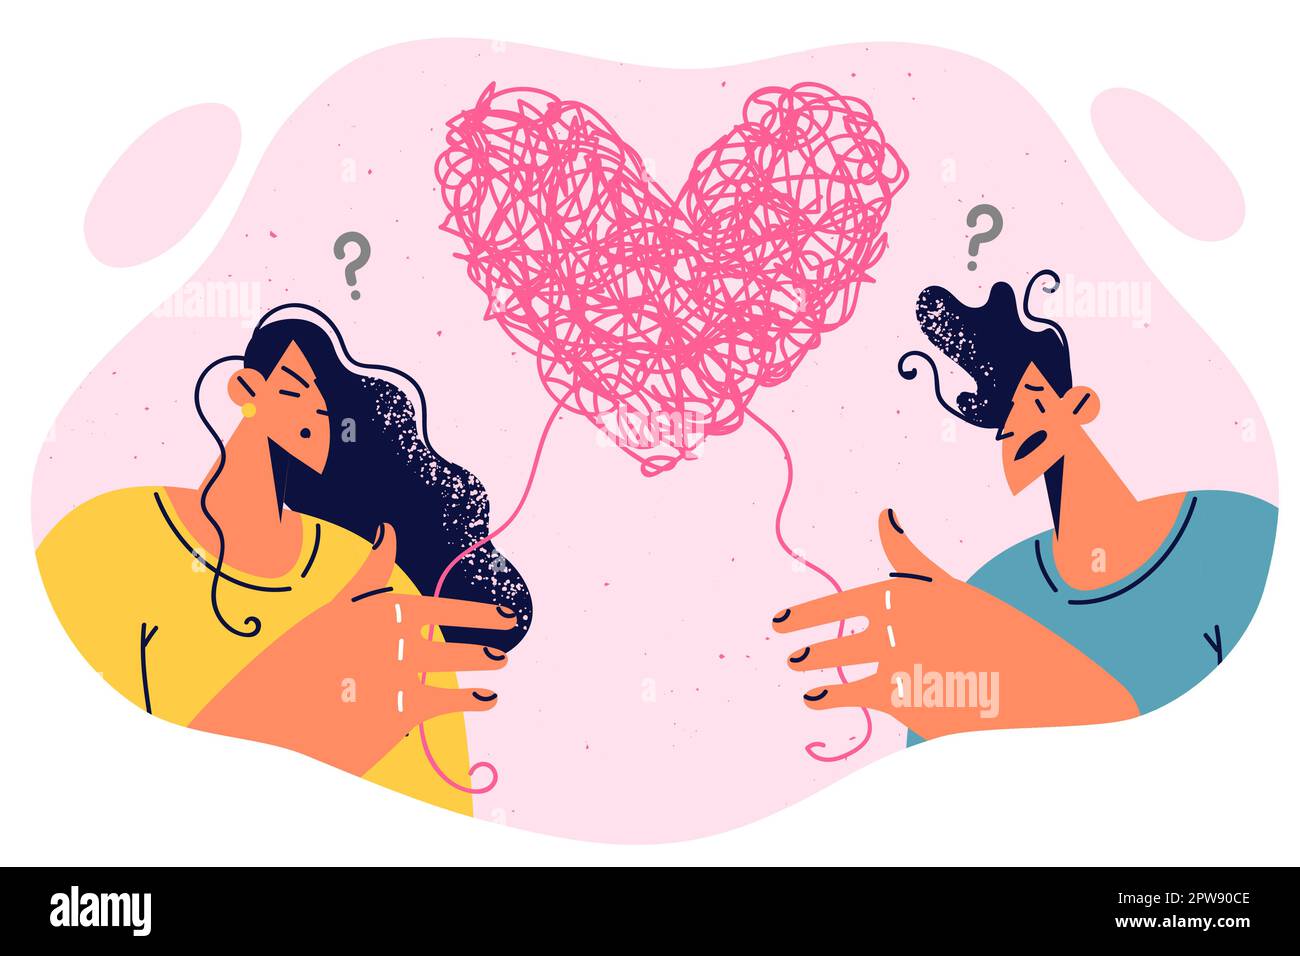 Hombre y mujer confundidos en sentimientos y relación están de pie cerca de coágulo de hilo en forma de corazón Ilustración del Vector